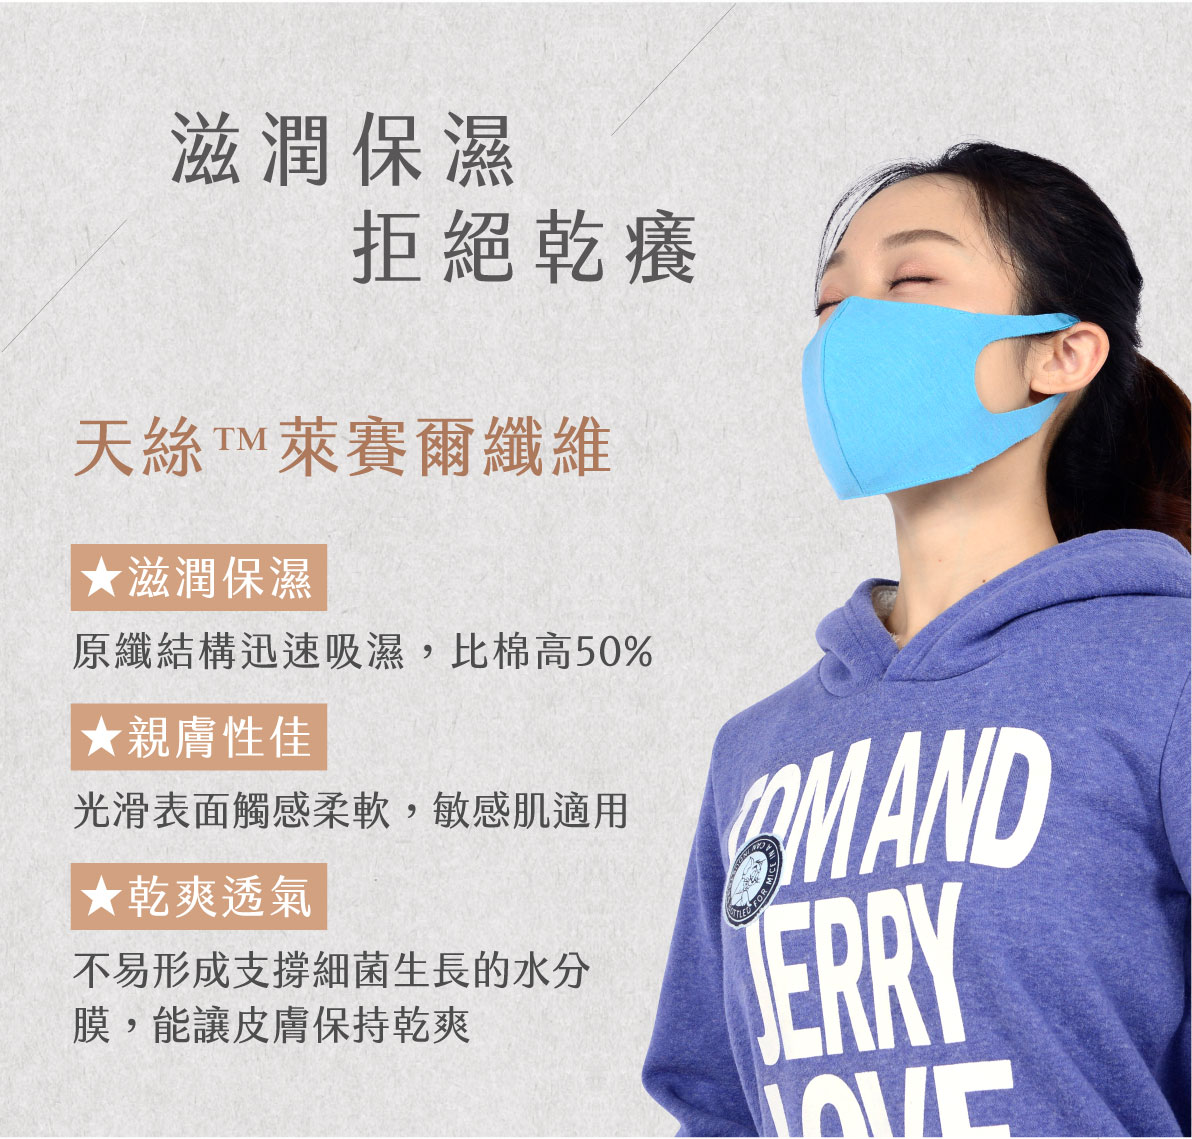 多機能防霾美顏口罩,抗敏,PM0.3,抗菌,透氣,PM2.5,口罩,防霾,小臉 